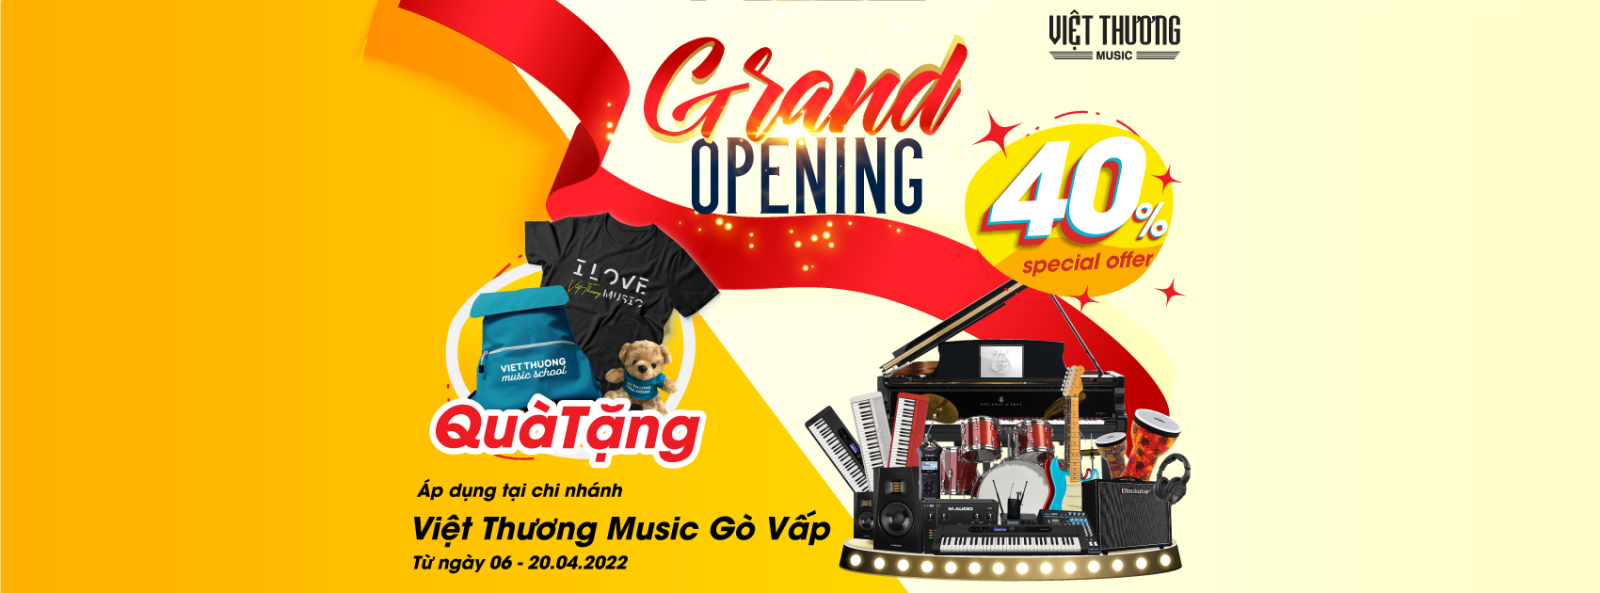 Thông báo khai trương chi nhánh Việt Thương Music mới tại Gò Vấp